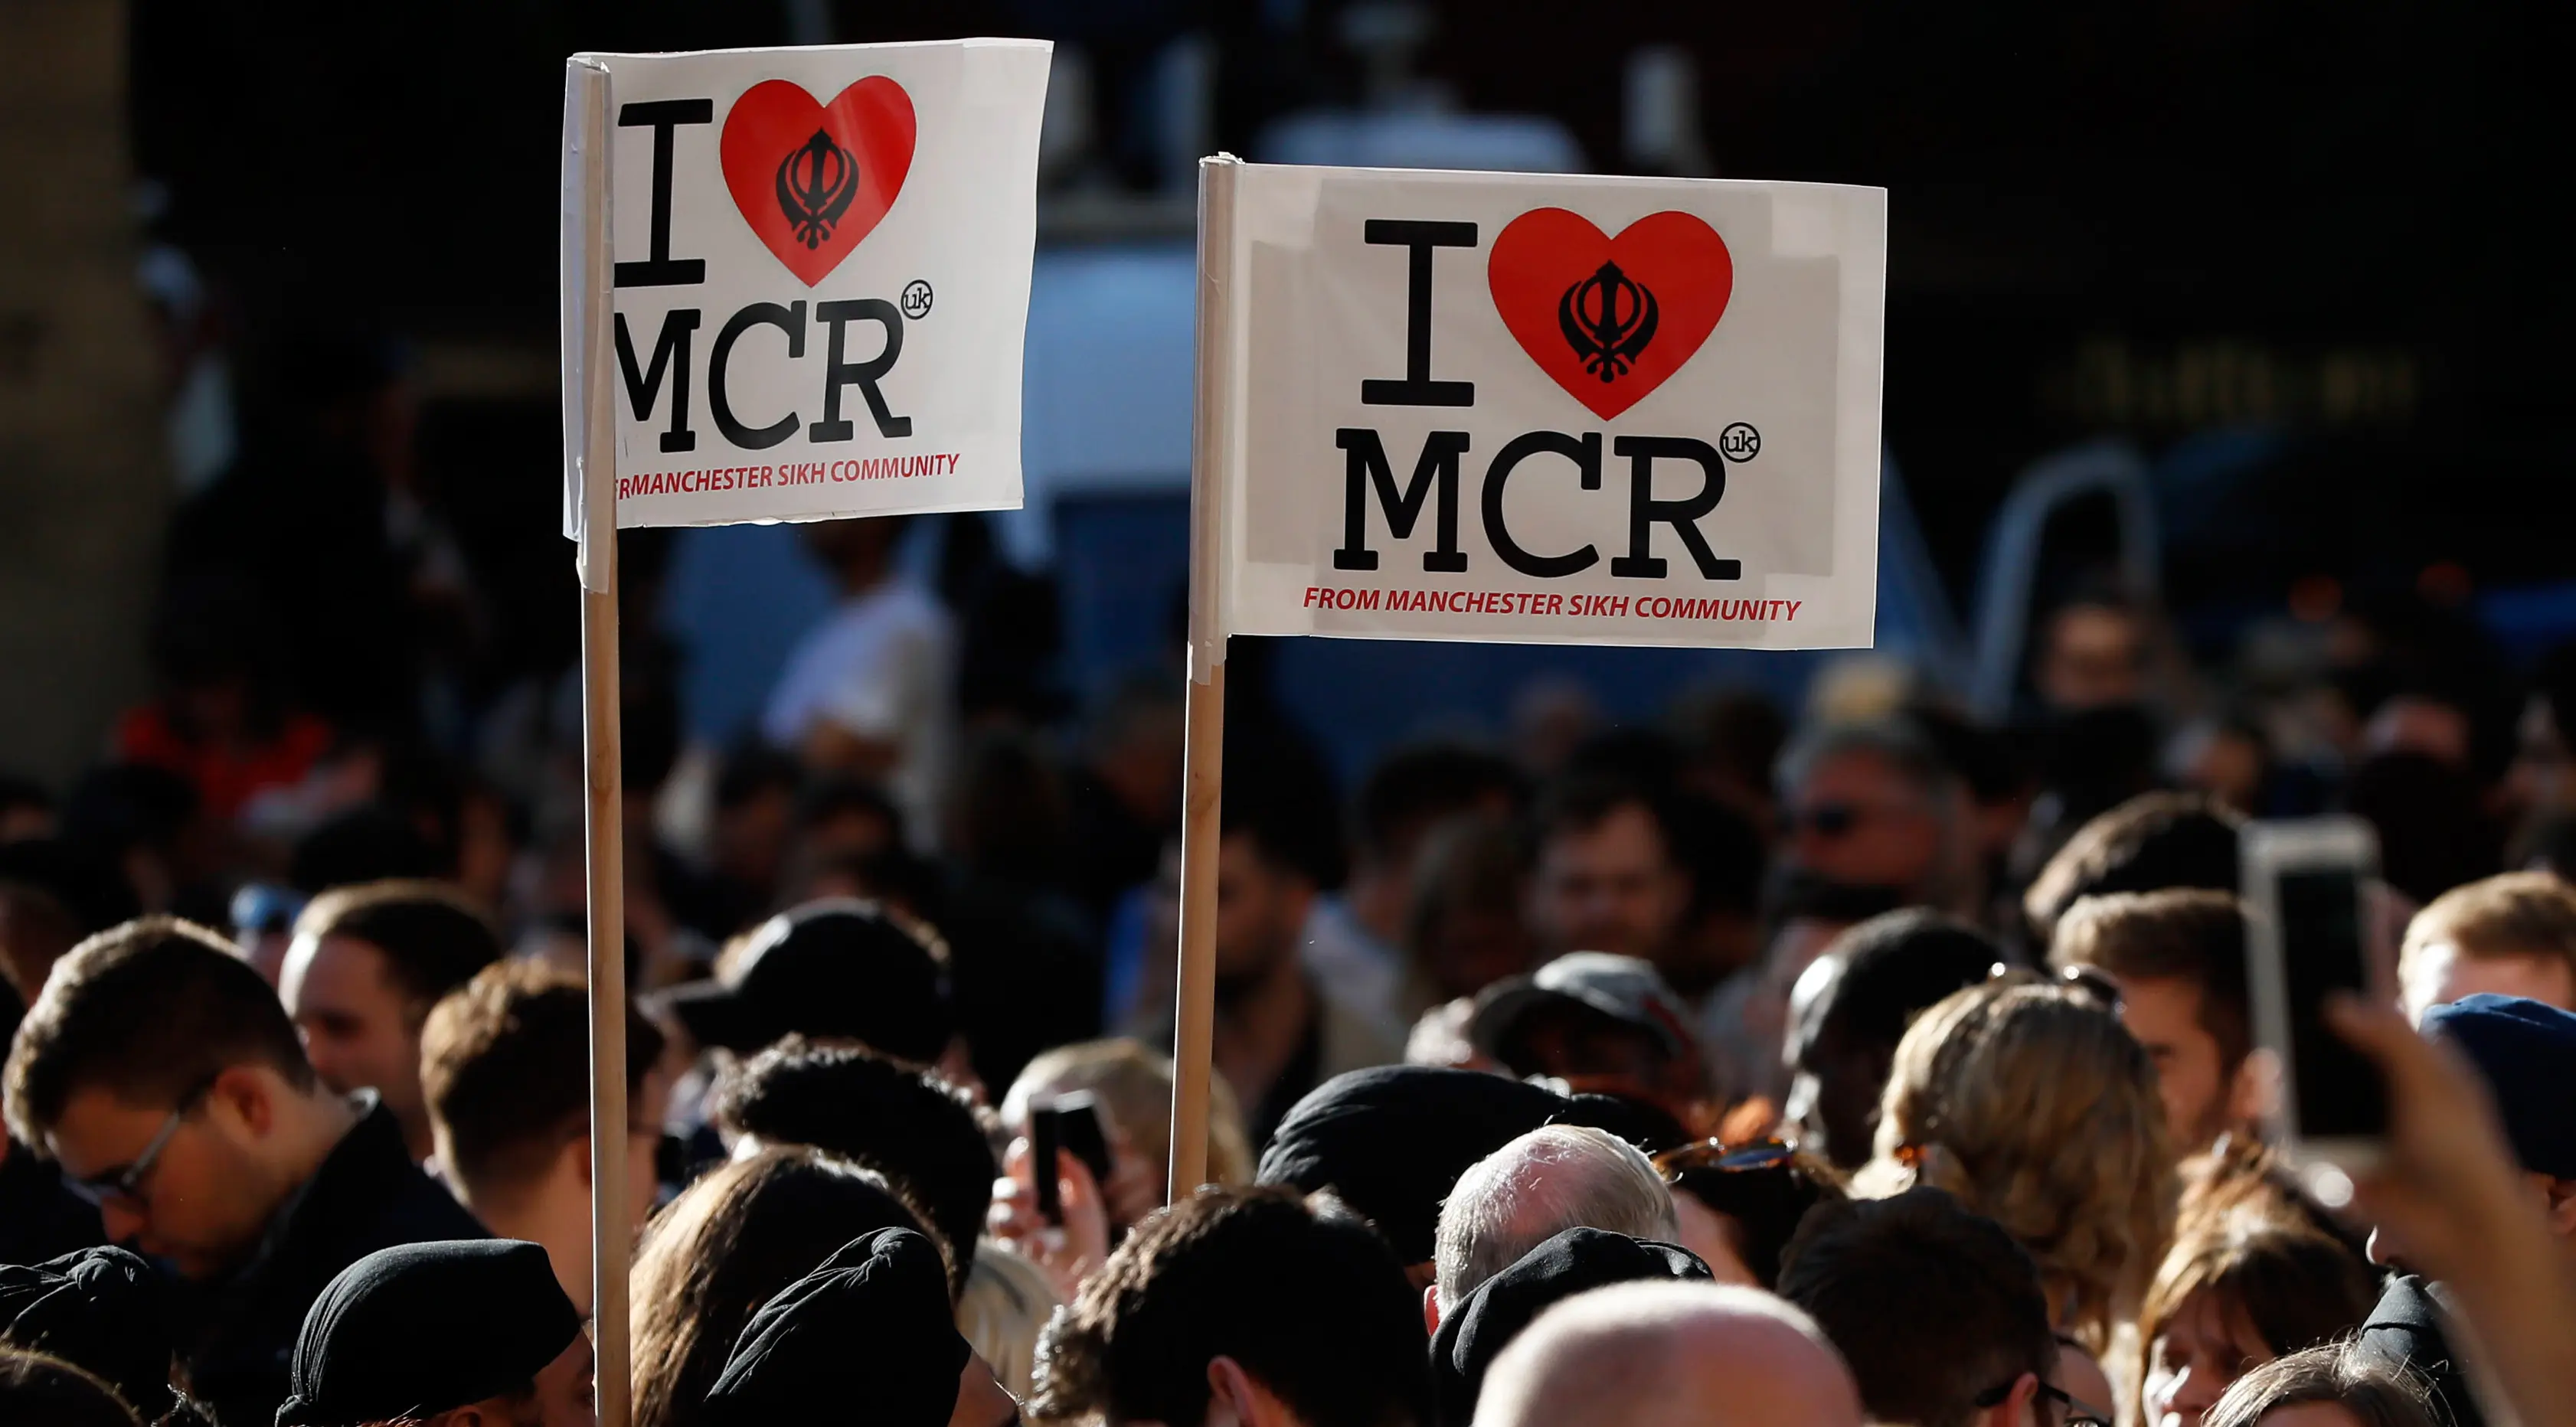 Sejumlah orang membawa poster 'I Love MCR' di pusat kota Manchester, sehari setelah ledakan bom saat konser Ariana Grande, Selasa (23/5). Mereka menggelar doa bersama untuk korban serangan bom yang menewaskan 22 orang (AP Photo/Kirsty Wigglesworth)